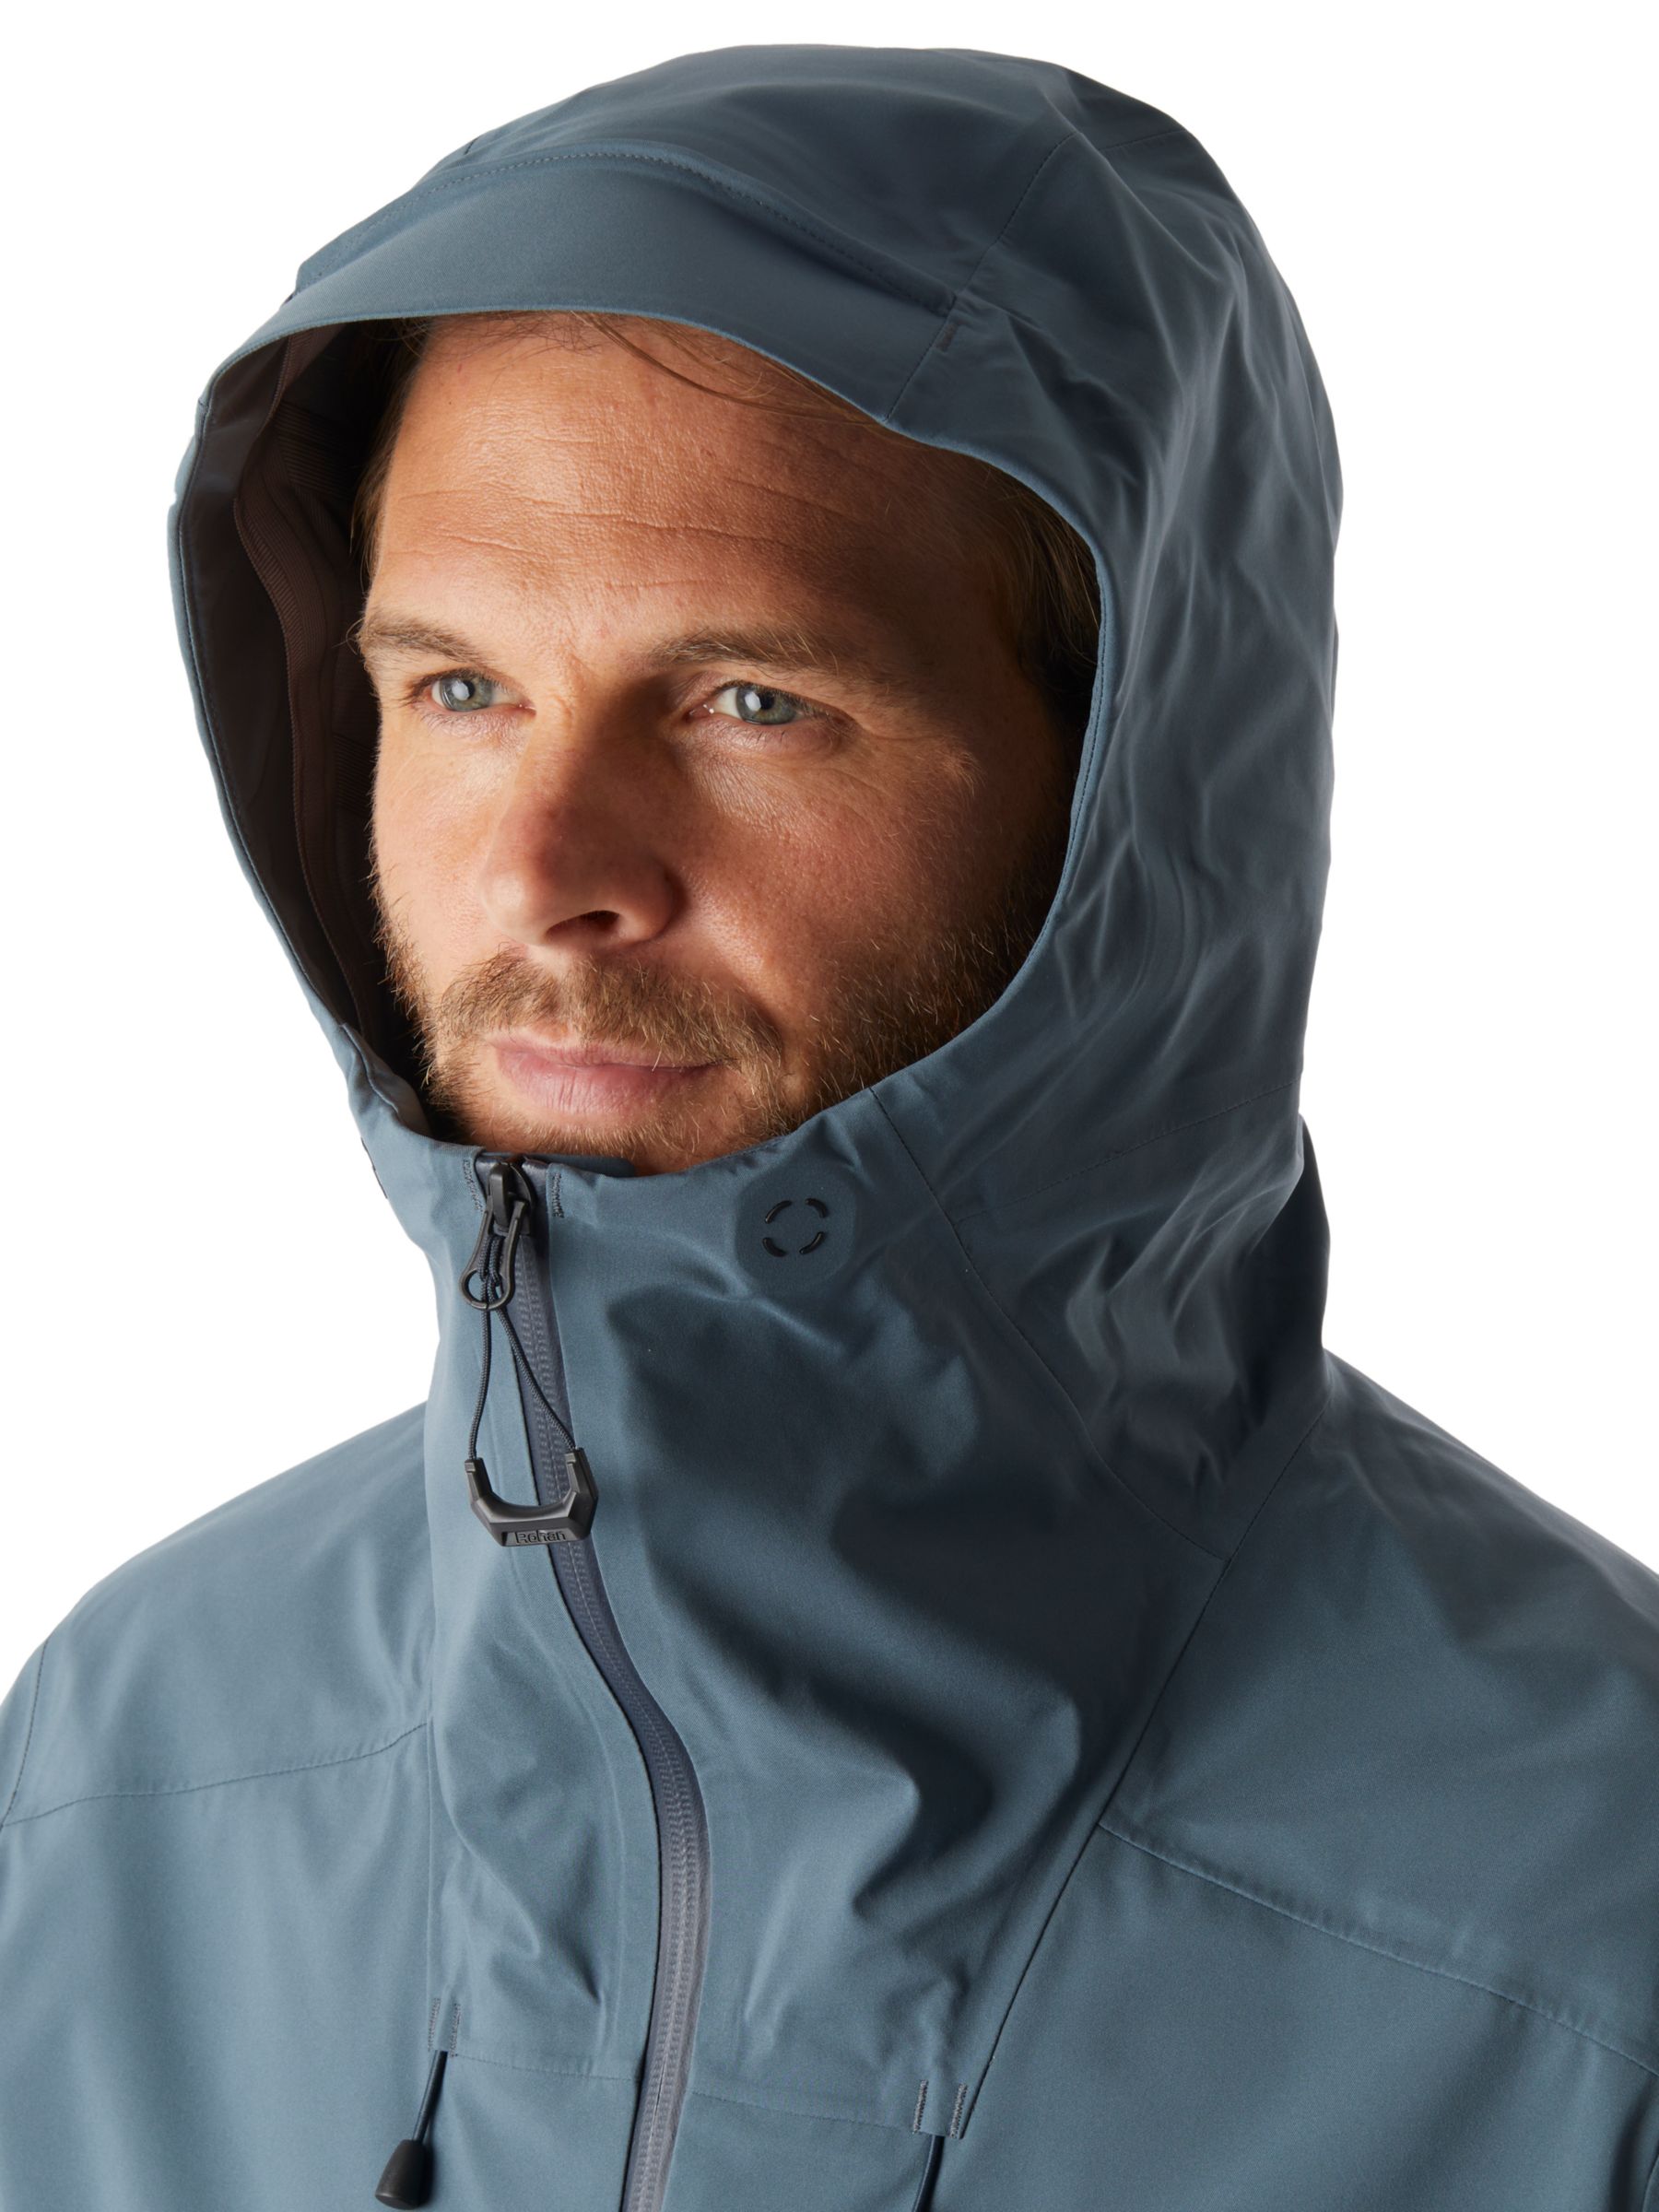 Rohan Ventus Men's Waterproof Jacket, Slate Grey, S